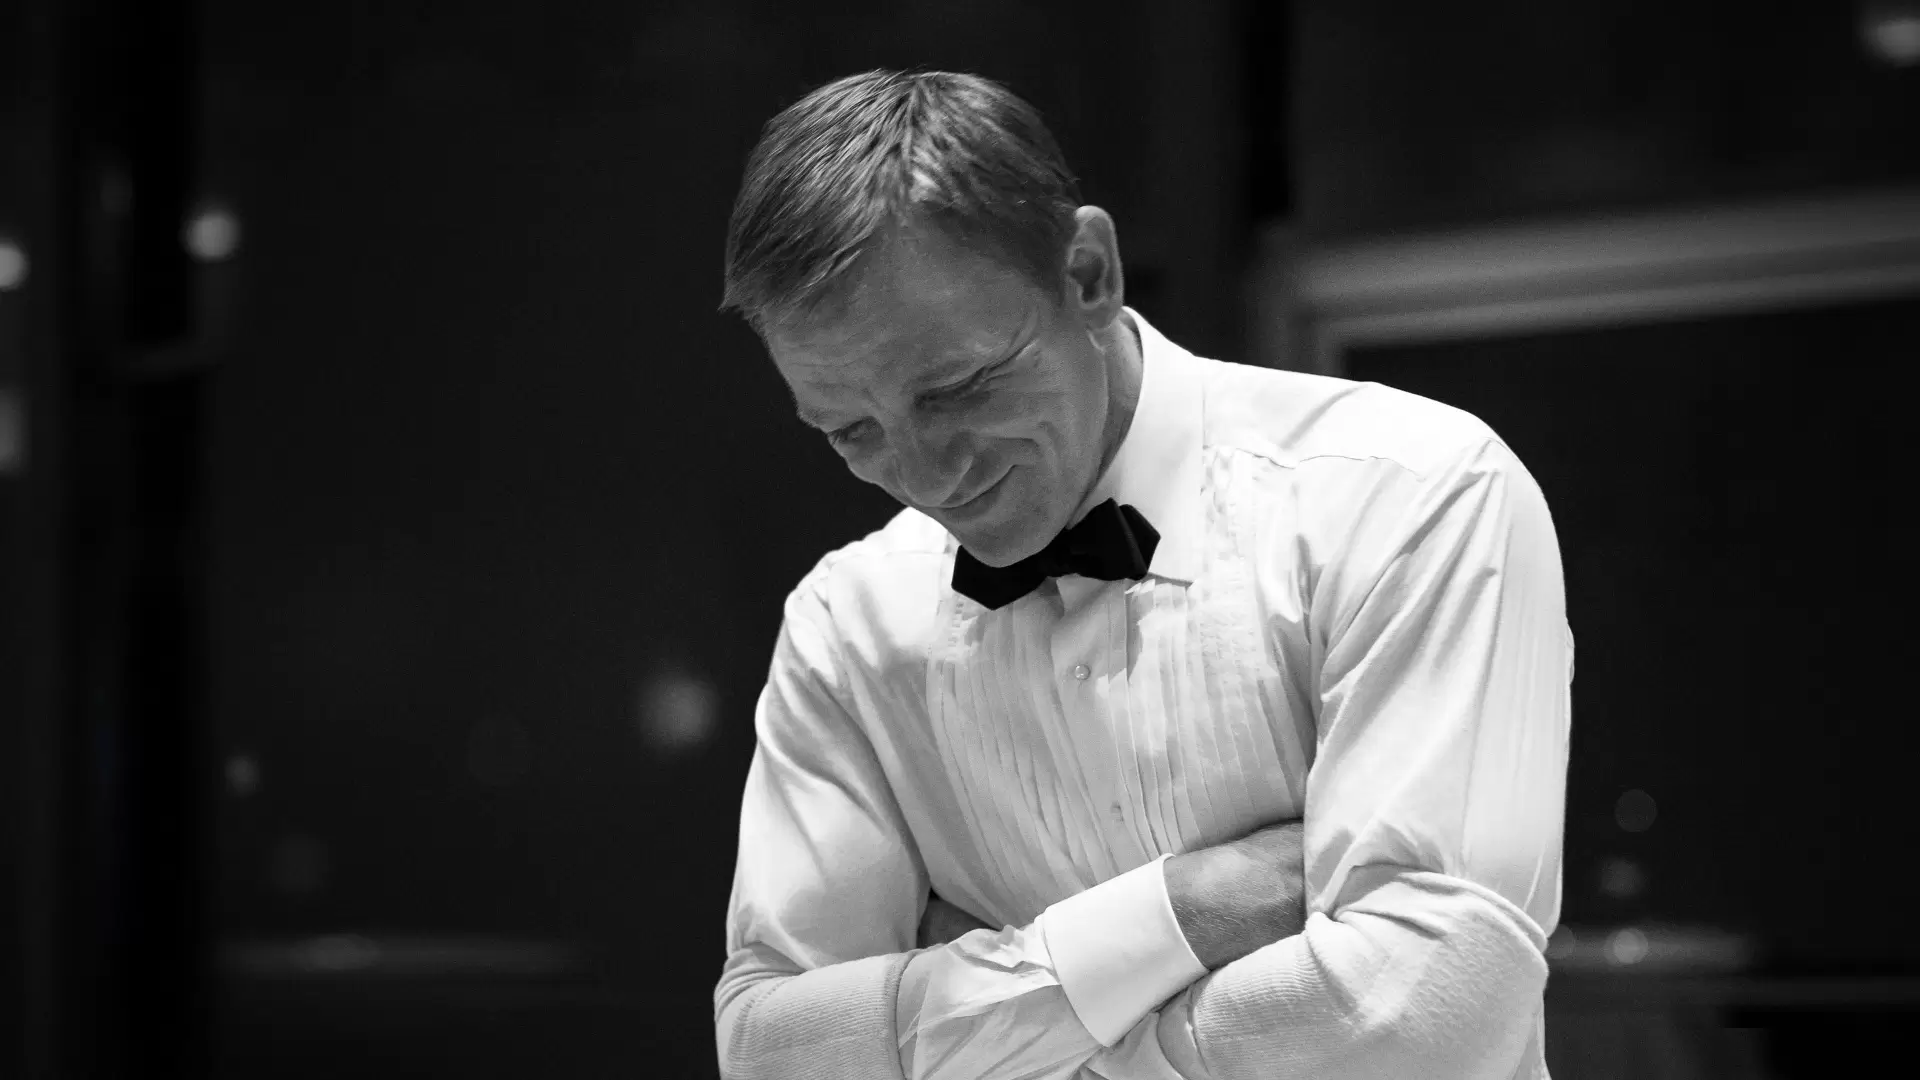 دانلود مستند Being James Bond: The Daniel Craig Story 2021 (جیمز باند بودن) با تماشای آنلاین